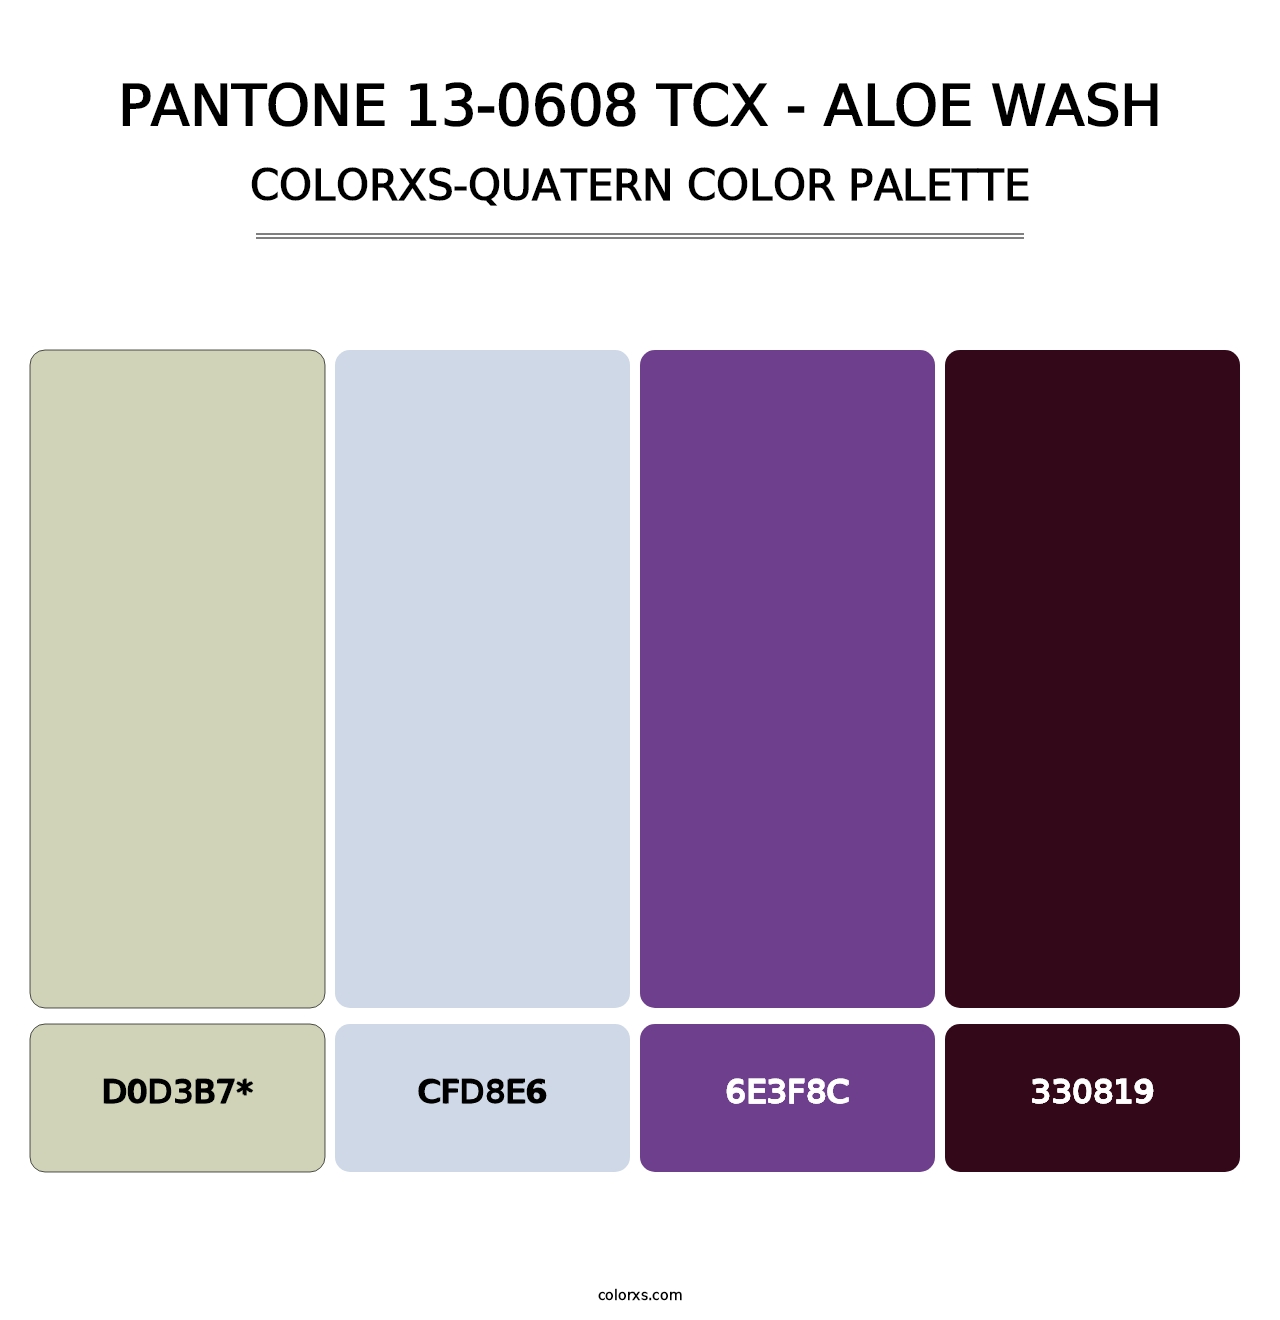 PANTONE 13-0608 TCX - Aloe Wash - Colorxs Quatern Palette